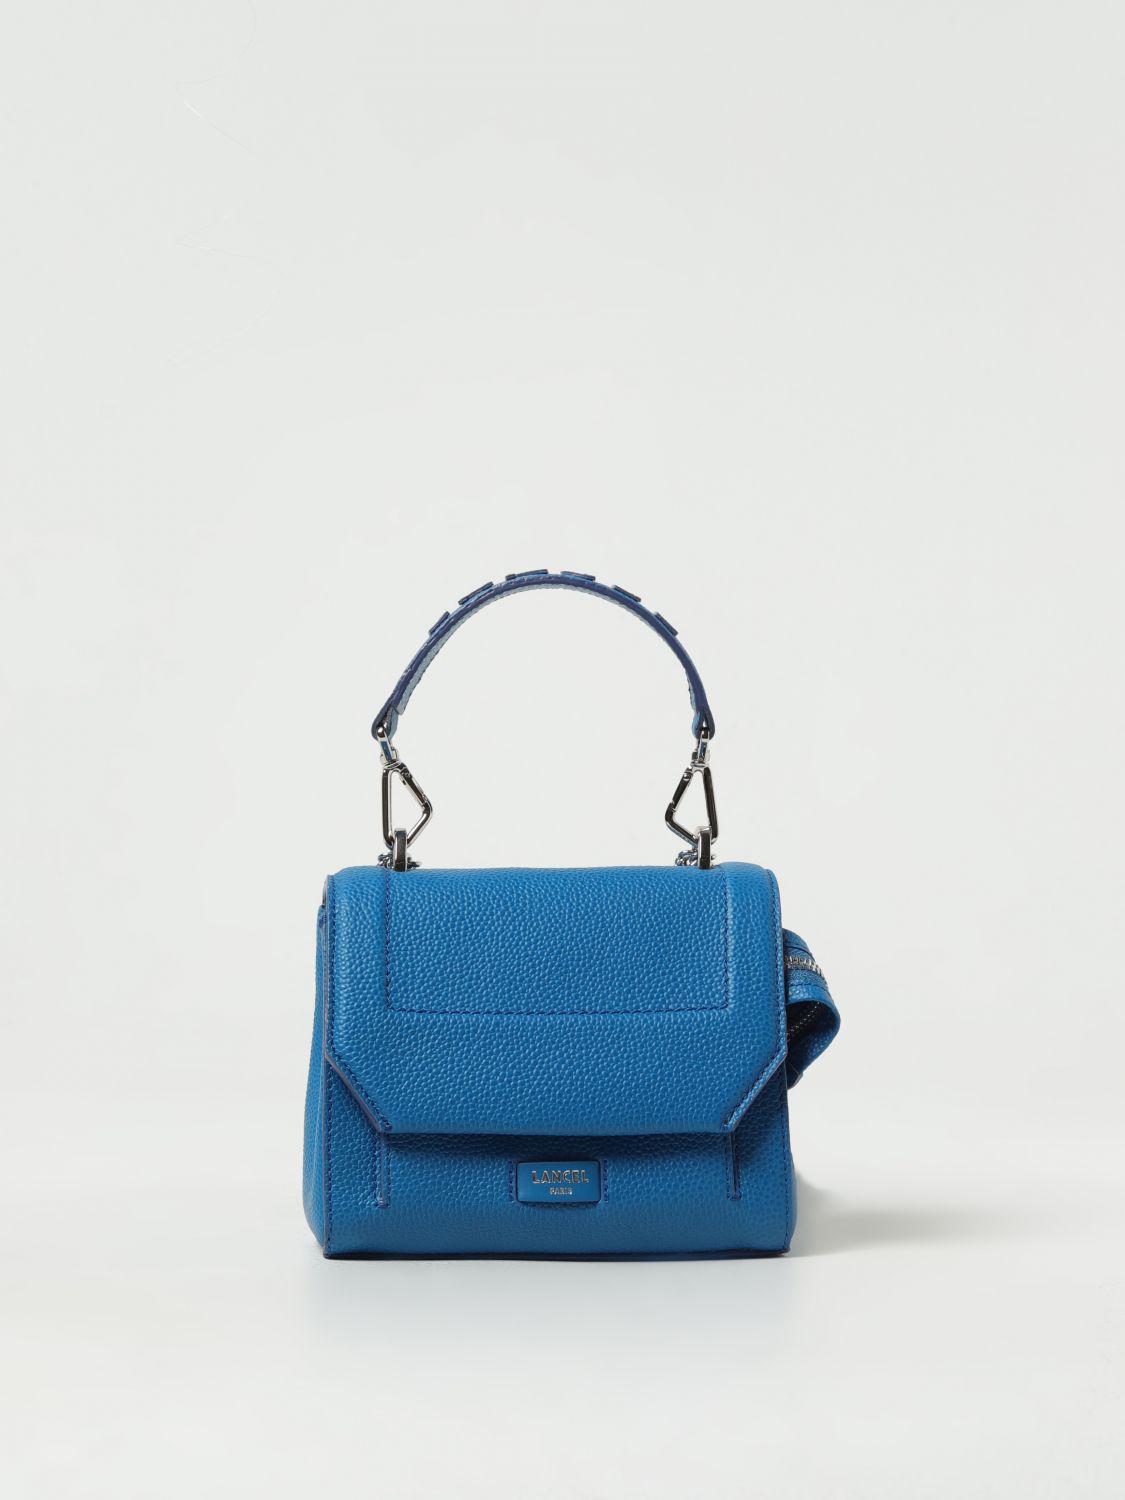 Lancel Mini Bag LANCEL Woman colour Blue